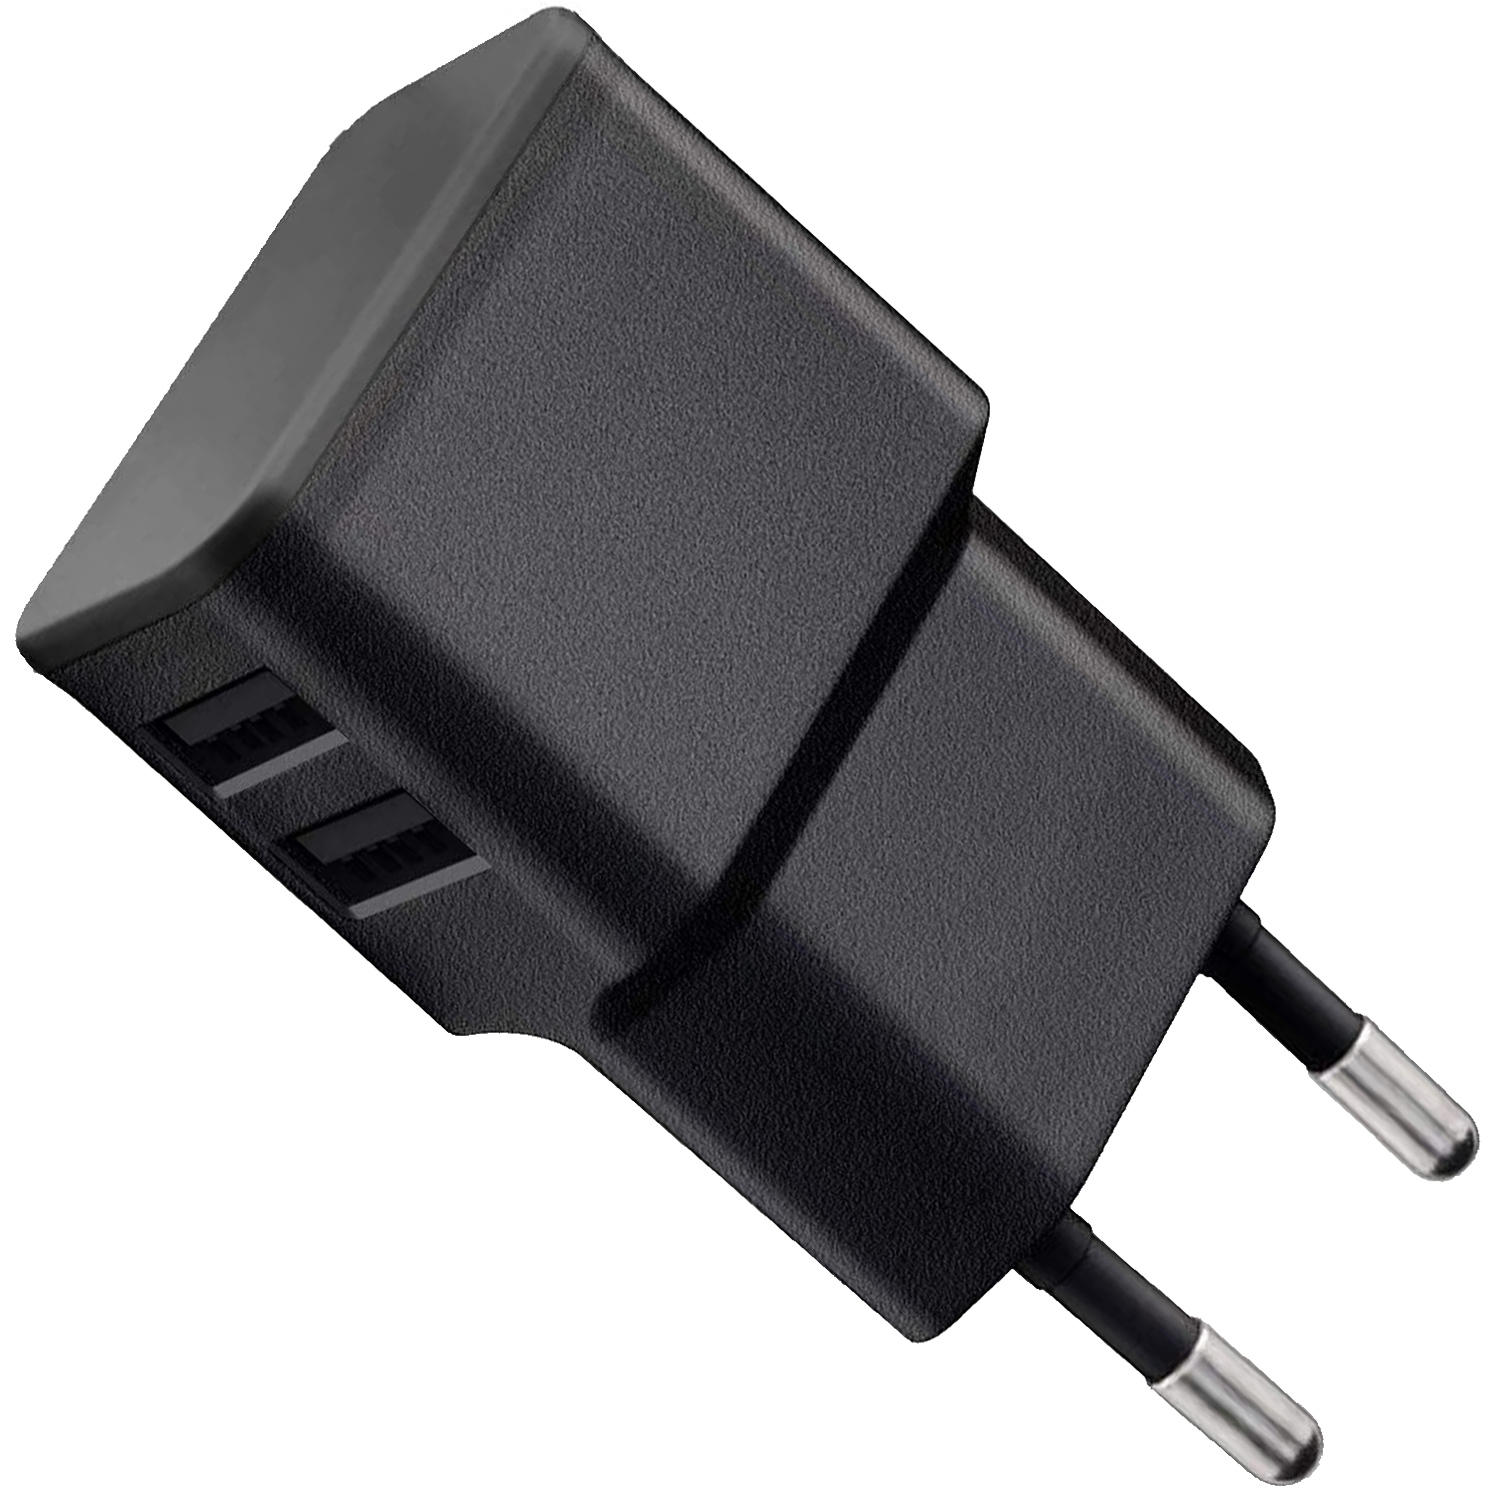 WICKED CHILI Dual USB Ladegerät Netzteil Roam, schwarz (2.4A,12W) Netzteil USB-A für auf USB-C 10W für USB Sonos Kabel ersetzt Dual